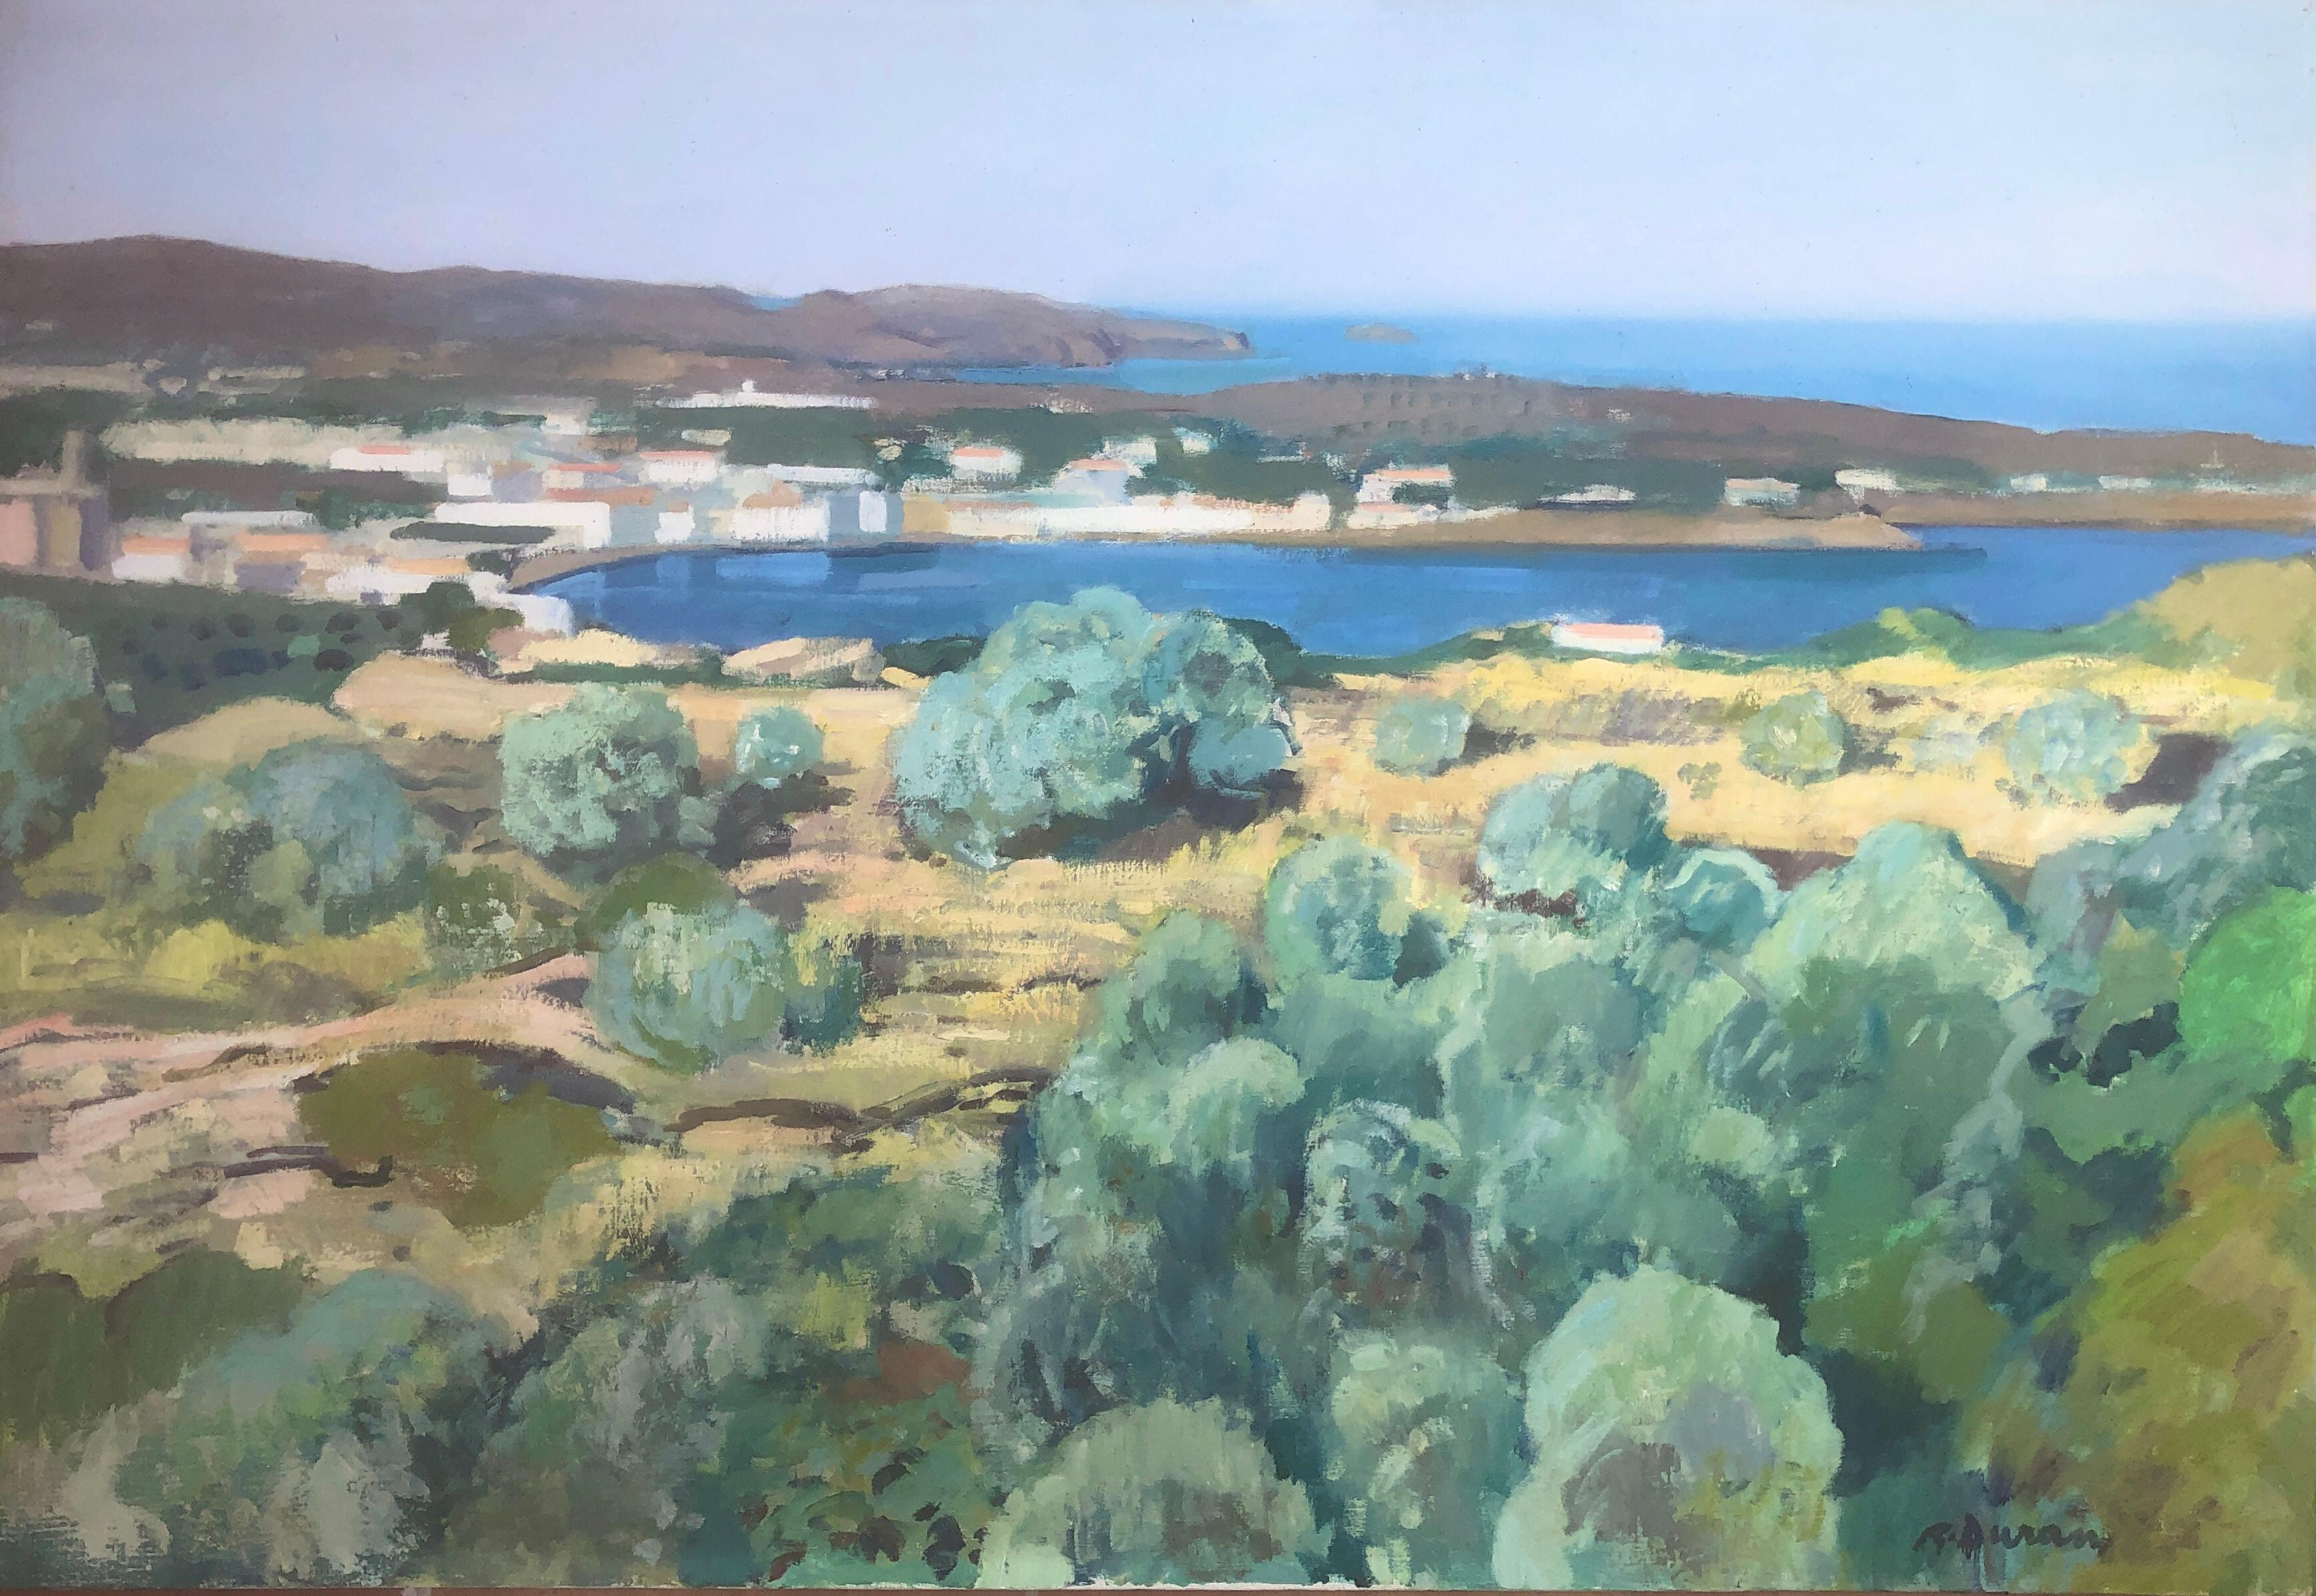 Landscape Painting Rafael Duran Benet - Cadaques huile sur toile peinture Espagne paysage marin espagnol